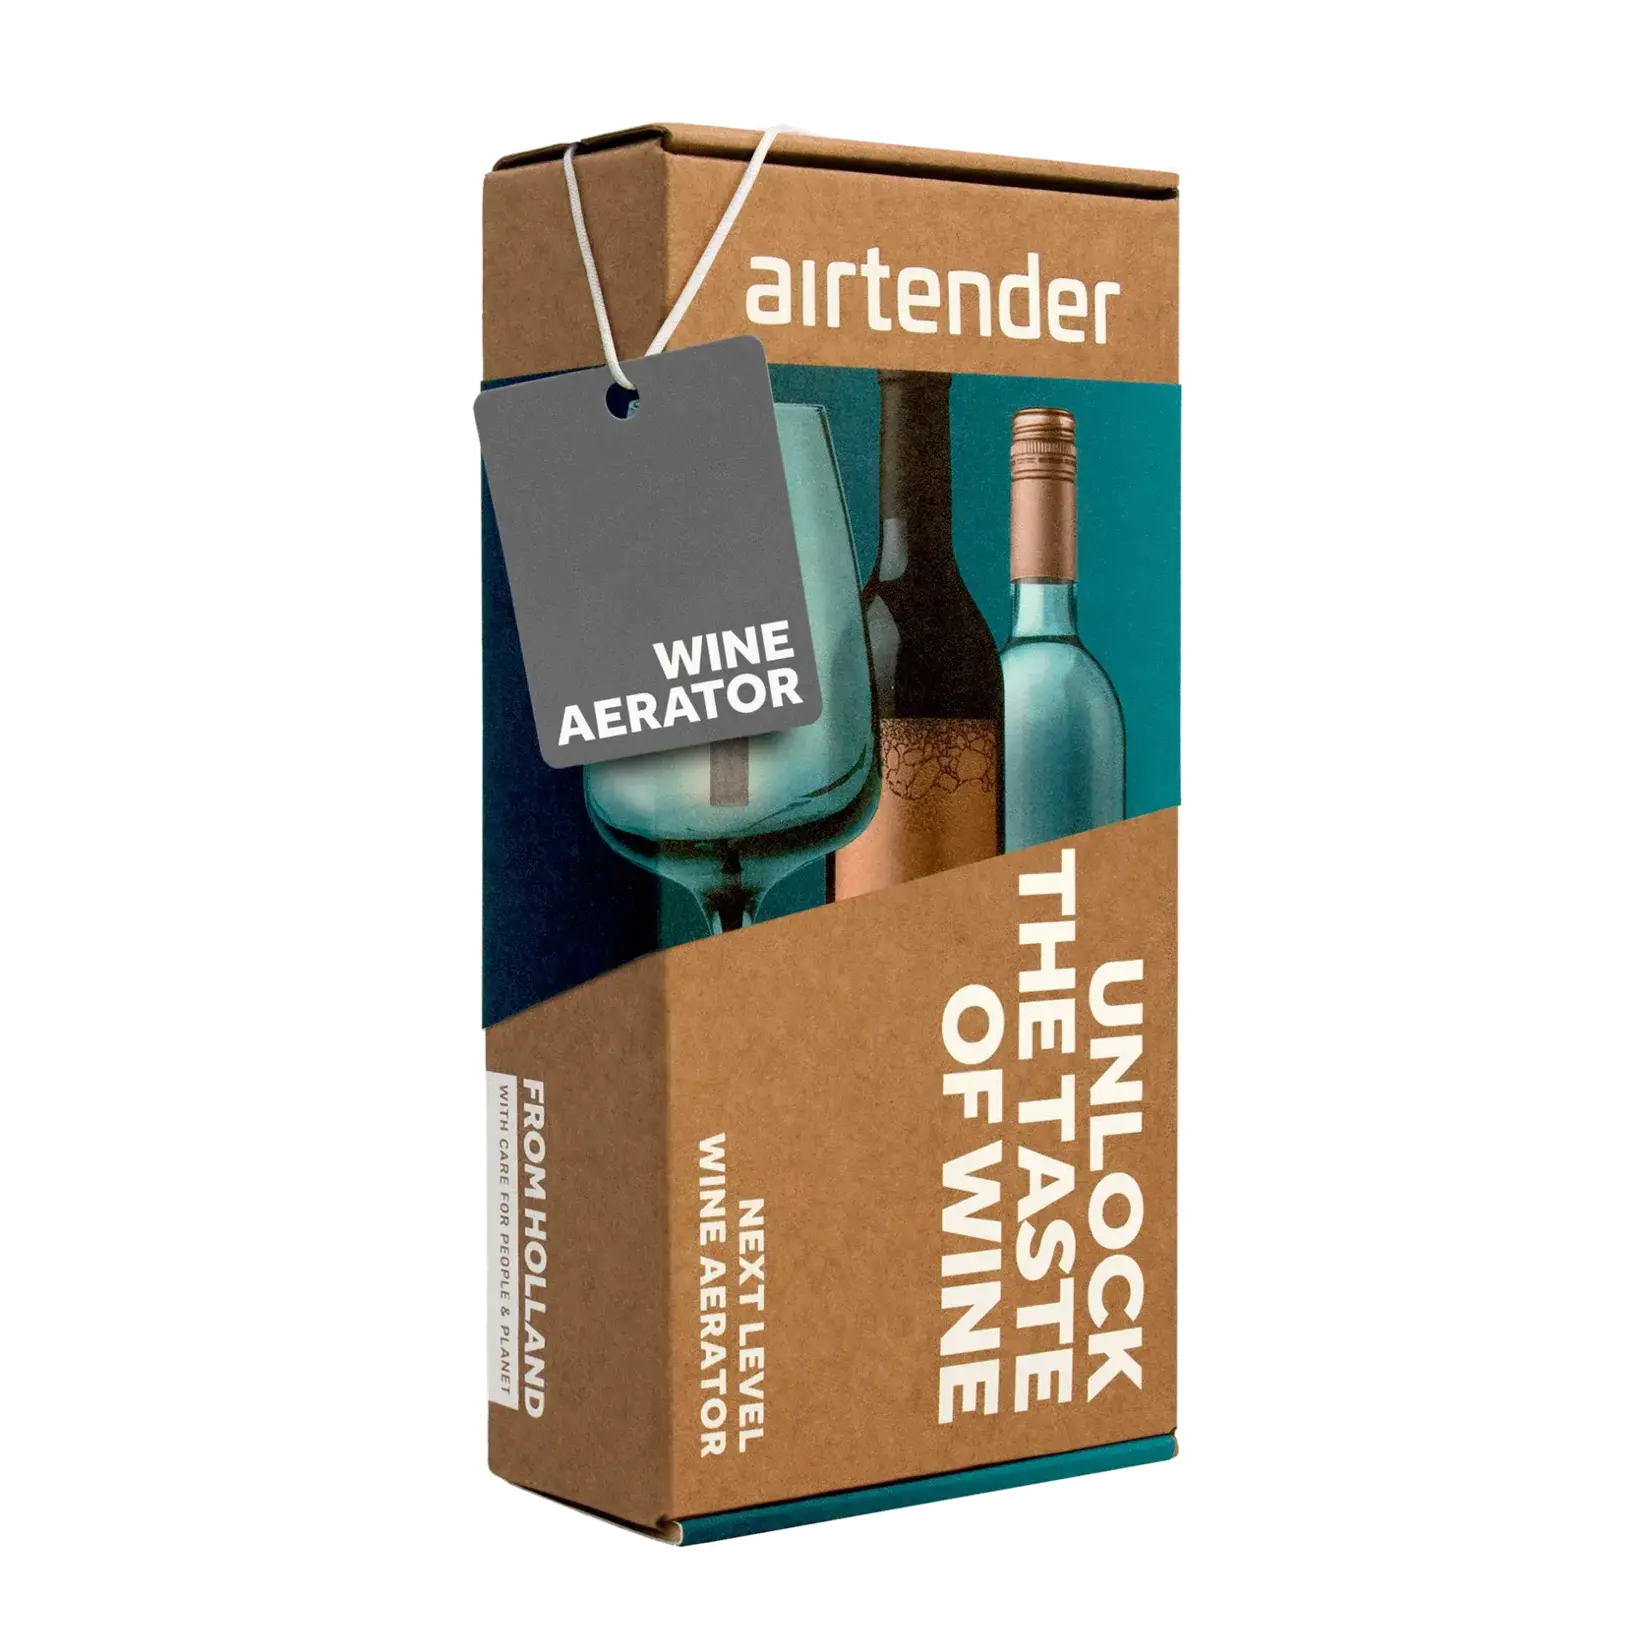 Airtender Wine Aerator Box